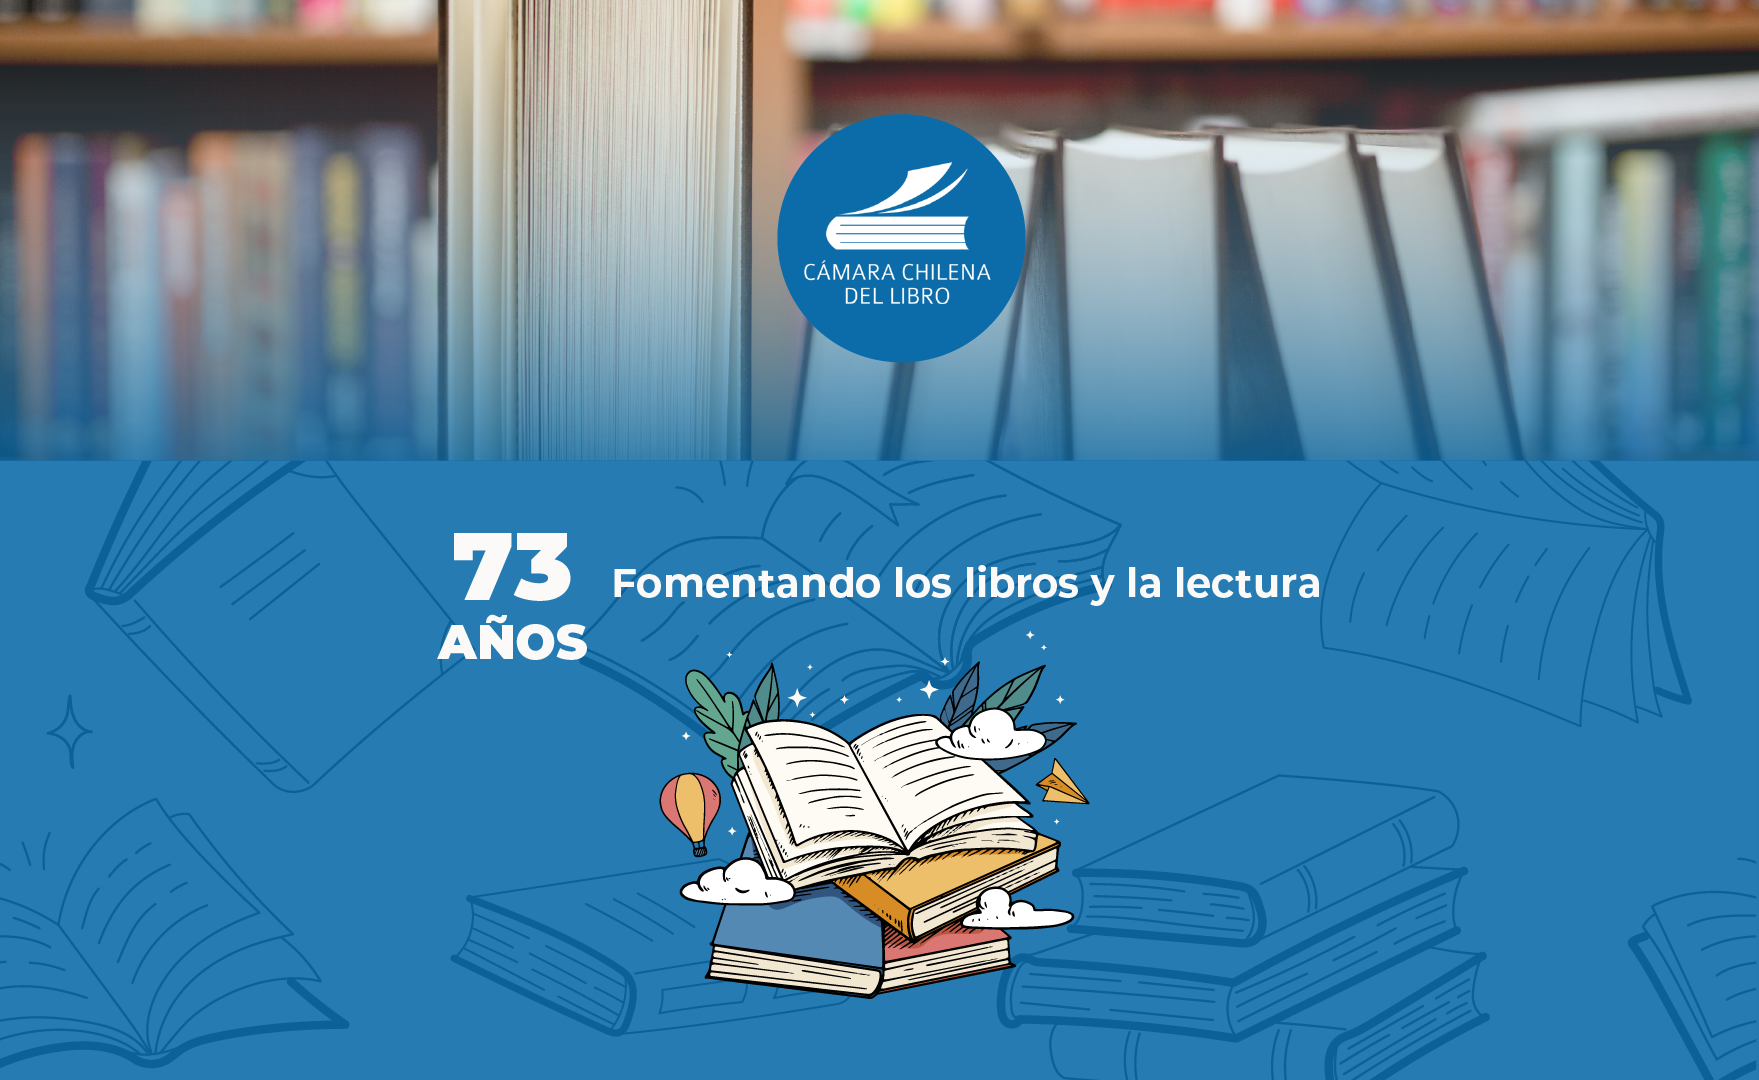 Cámara Chilena del Libro celebra sus 73 años de existencia